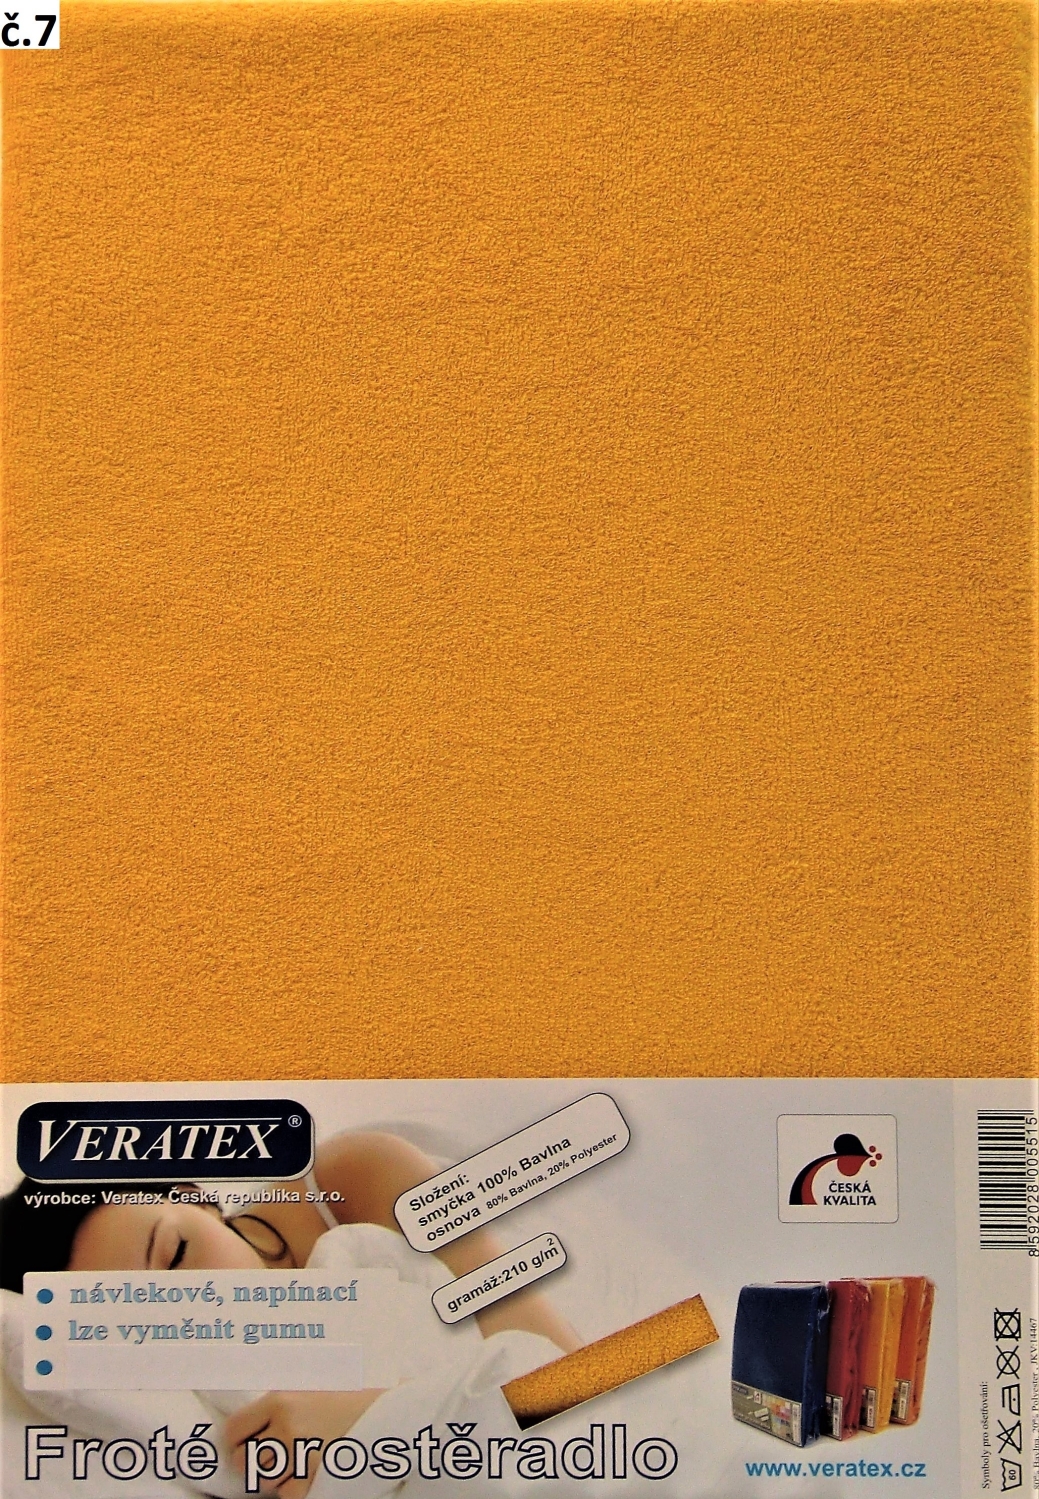 Veratex Froté prostěradlo jednolůžko 90x200/40cm (č. 7-sytě žluté)